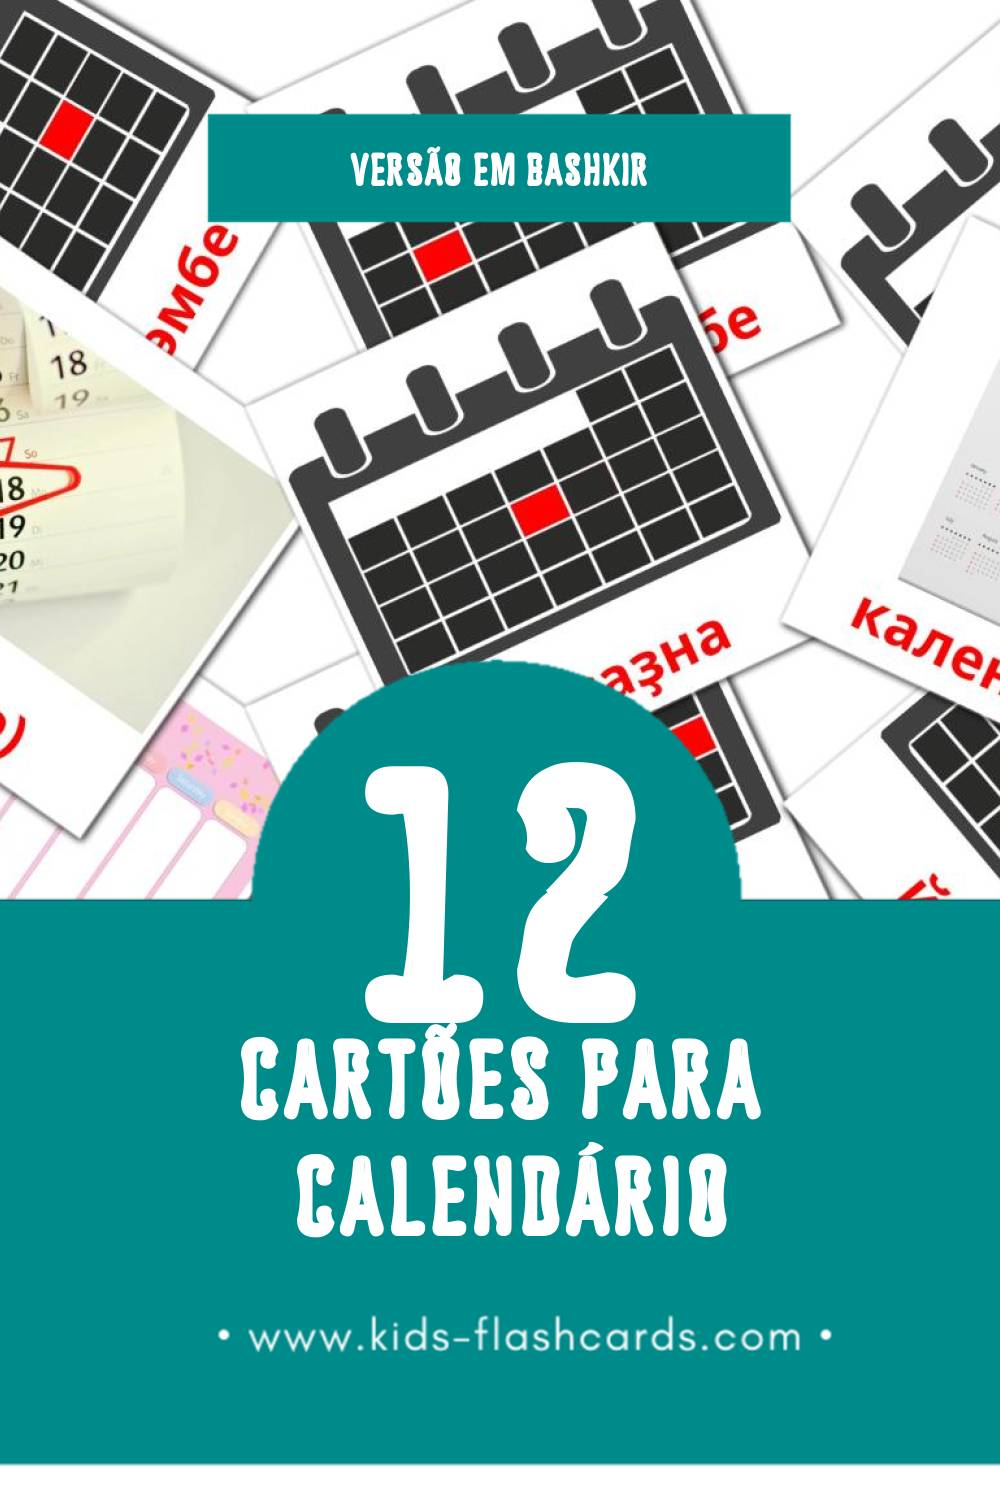 Flashcards de календарь Visuais para Toddlers (24 cartões em Bashkir)